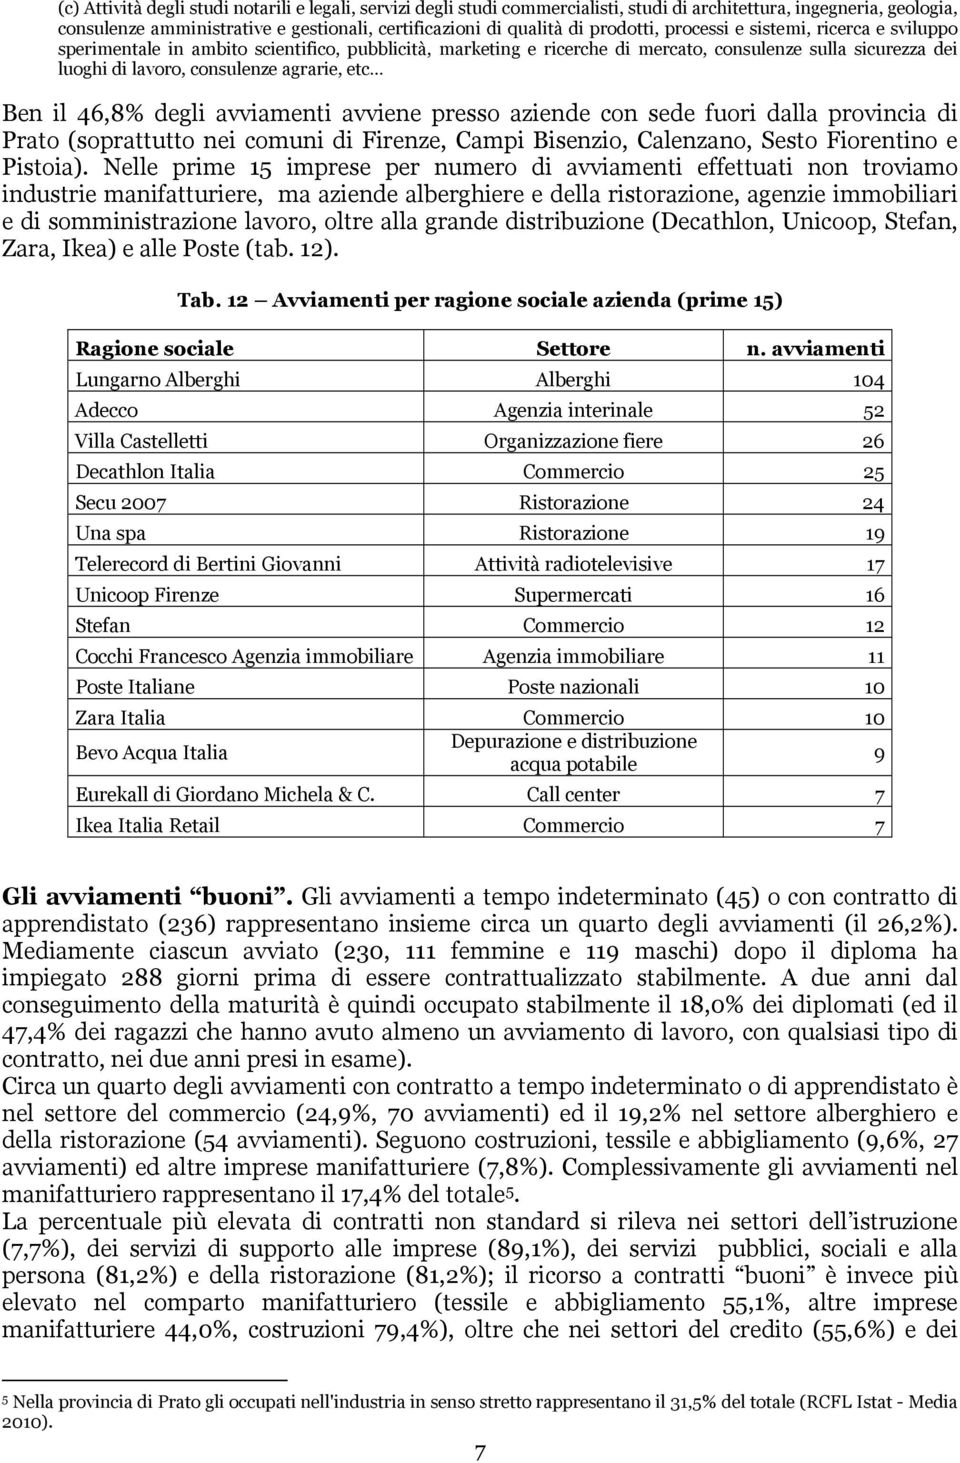 etc Ben il 46,8% degli avviamenti avviene presso aziende con sede fuori dalla provincia di Prato (soprattutto nei comuni di Firenze, Campi Bisenzio, Calenzano, Sesto Fiorentino e Pistoia).